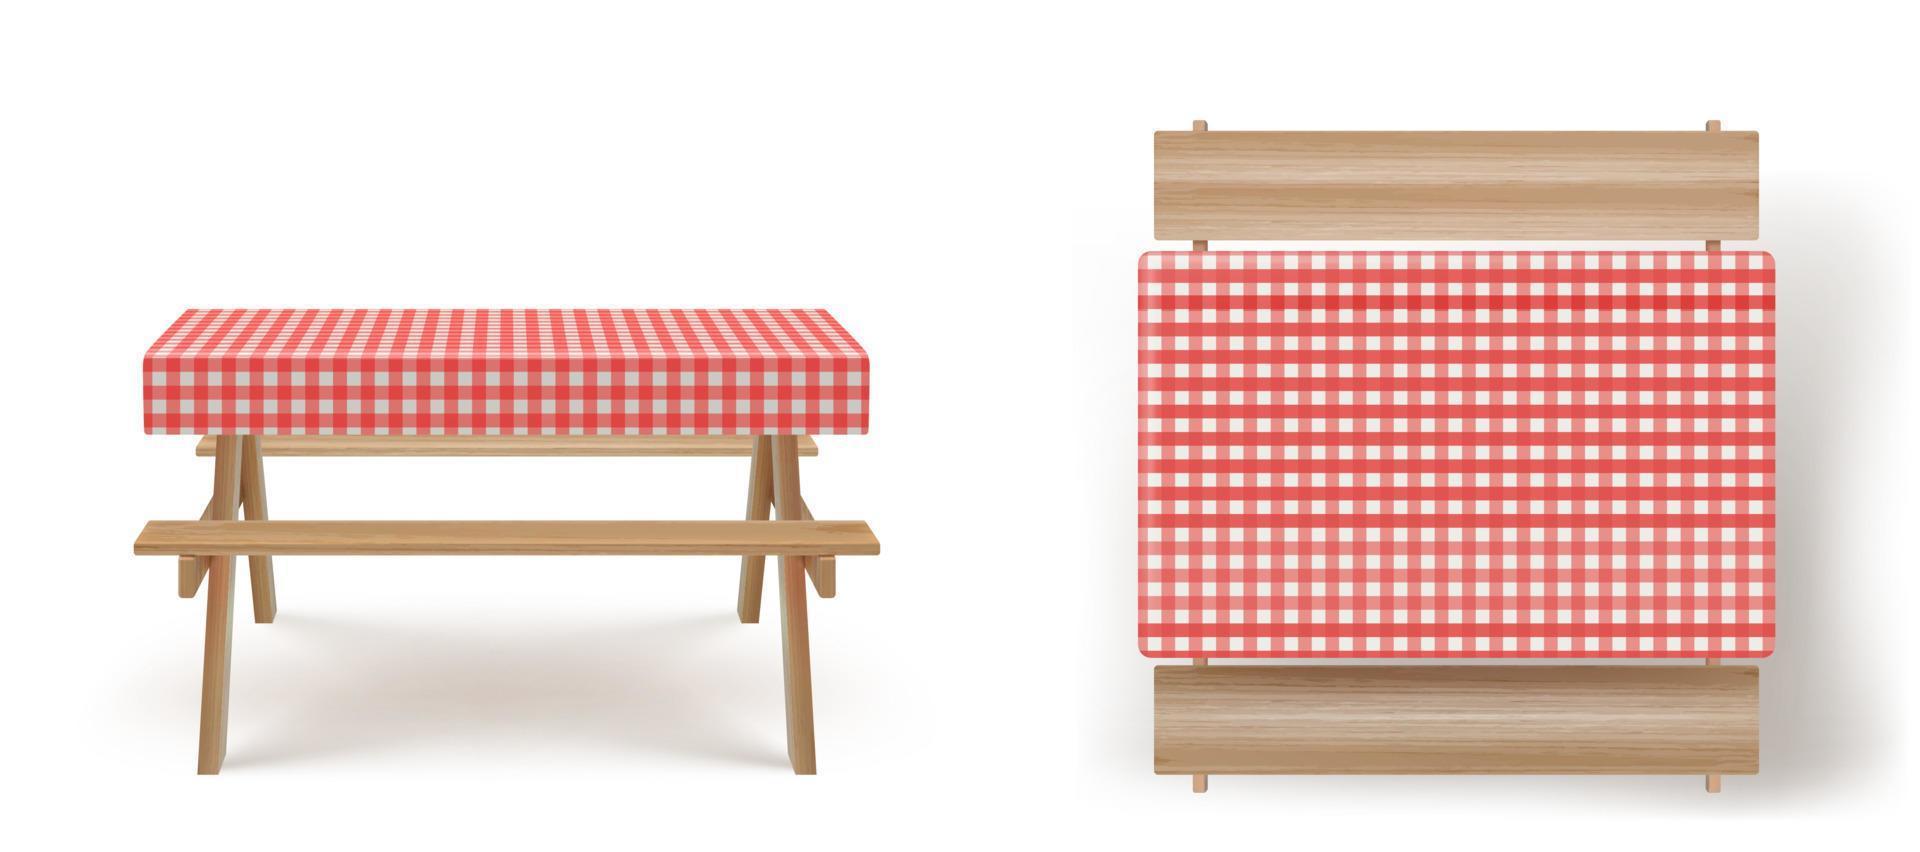 trä- picknick tabell med bänkar bordsduk vektor